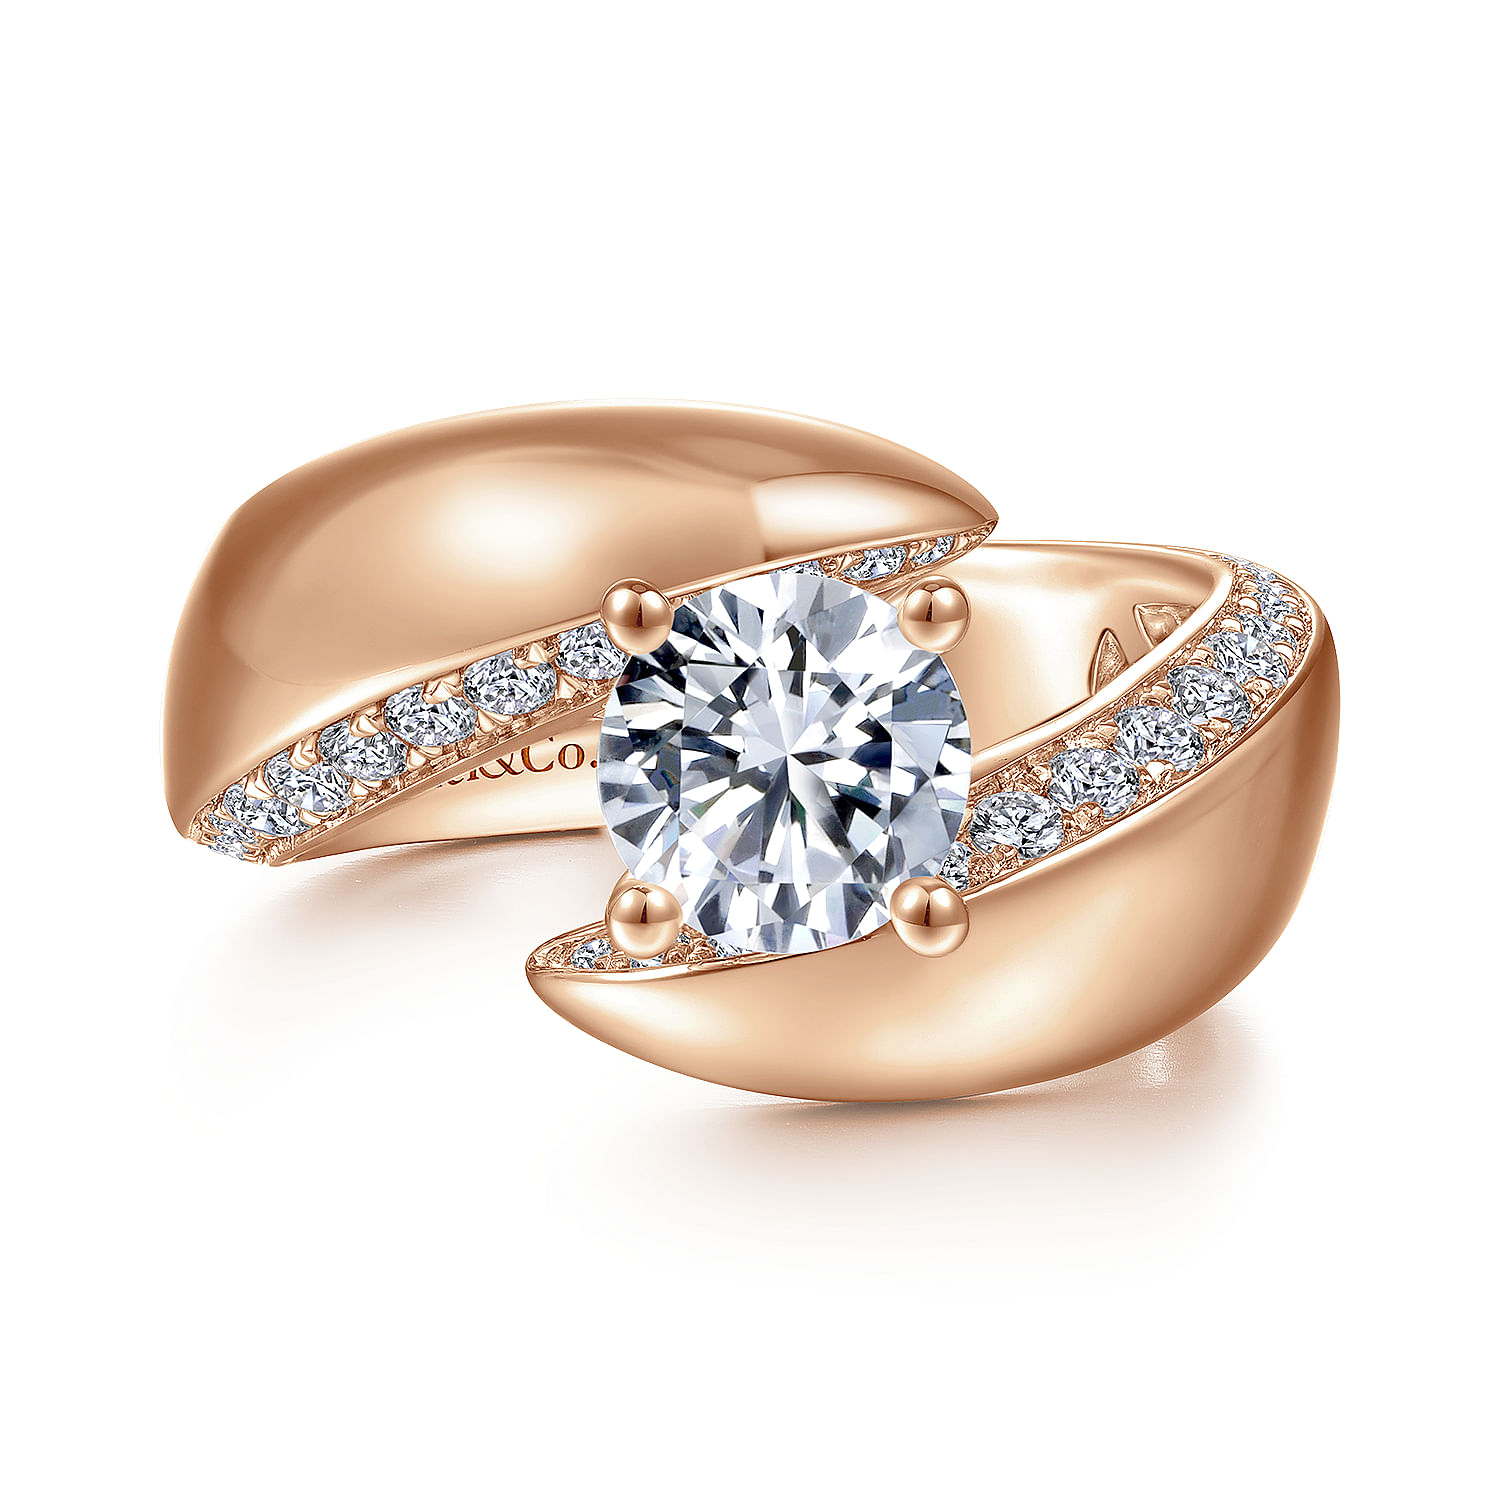 Gabriel - 14K Rose Gold Round Diamond Engagement Ring